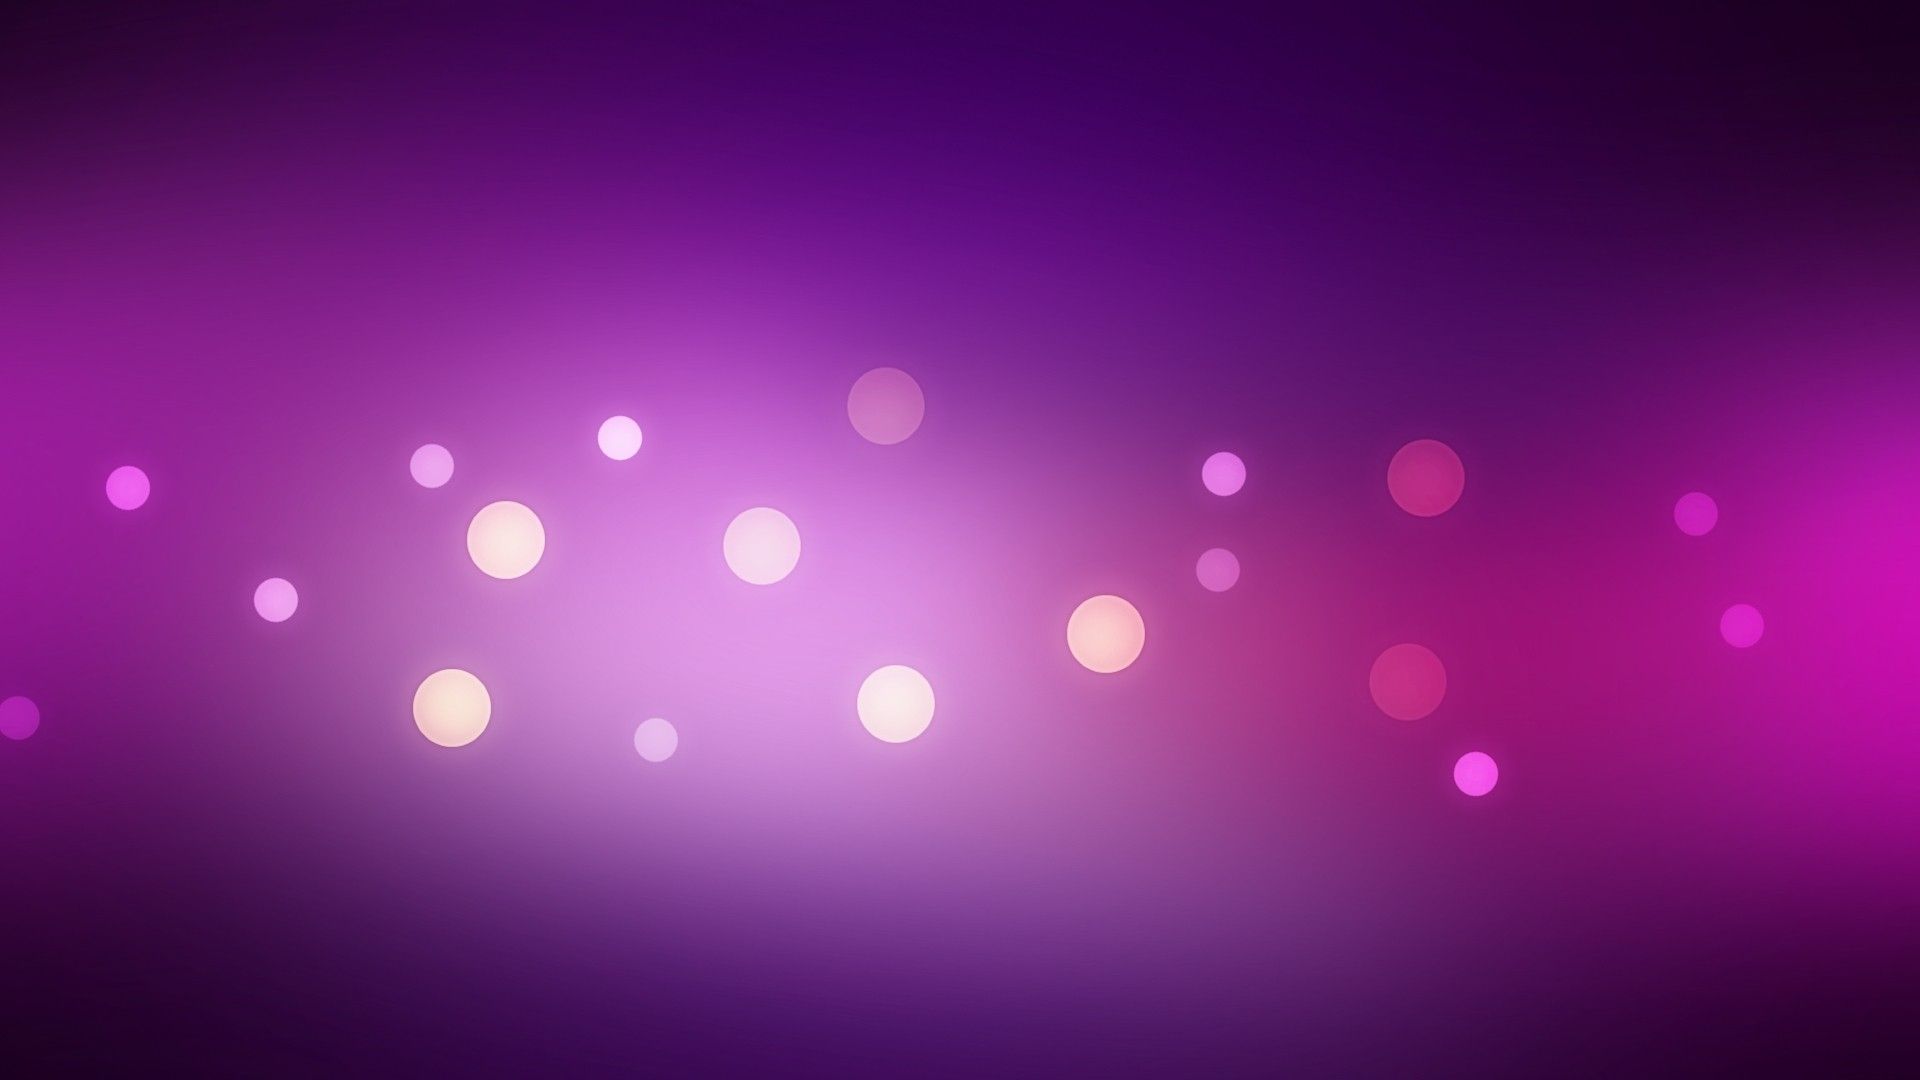 HD wallpaper, Abstract, Purple, Circles